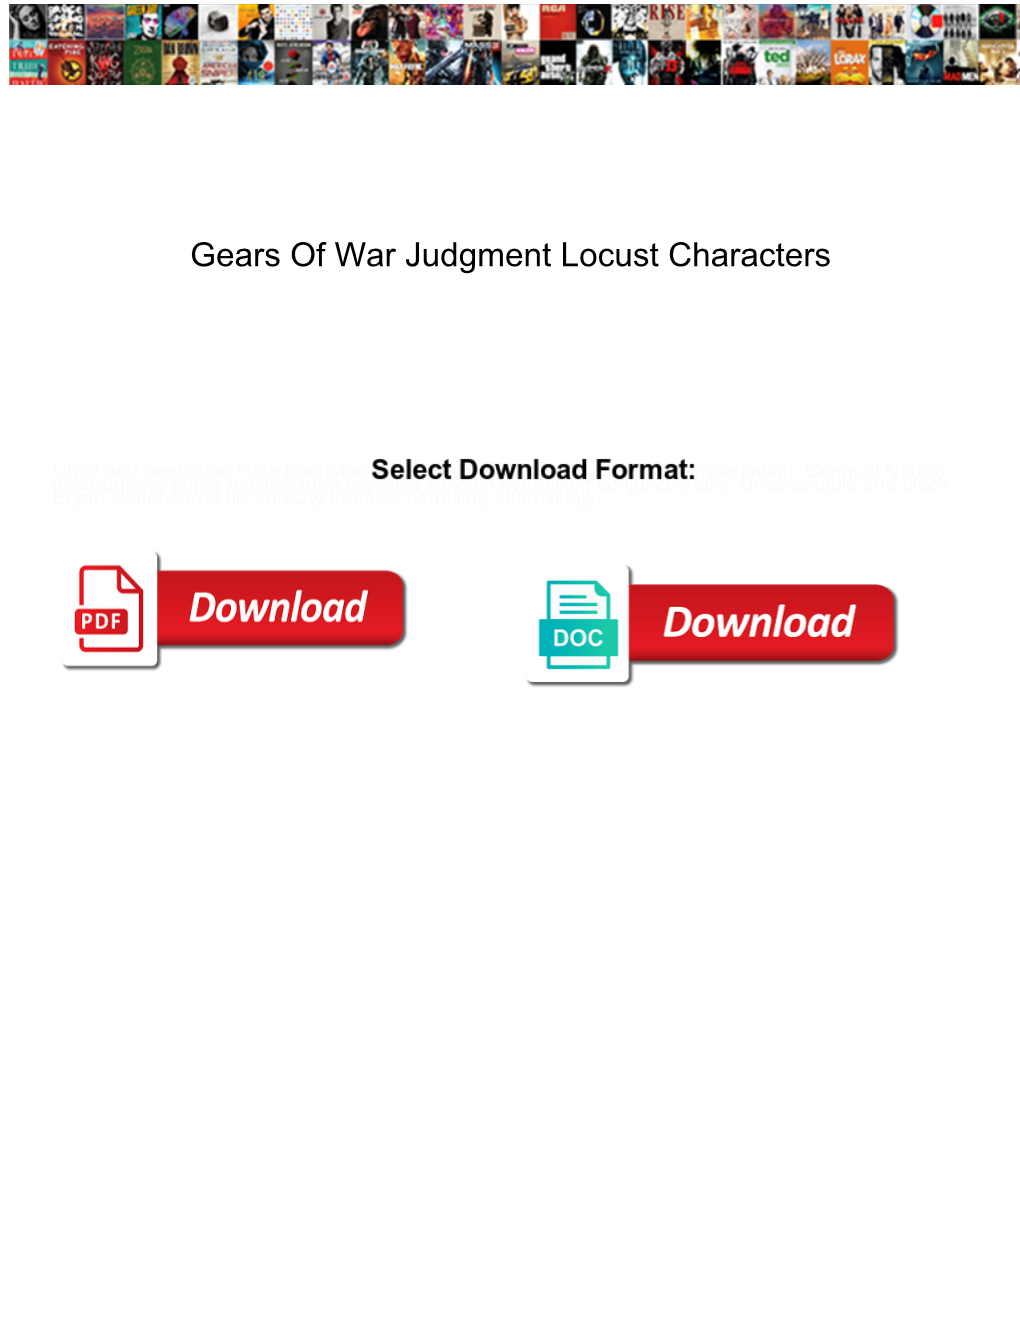 Gears of War Judgment Locust Characters